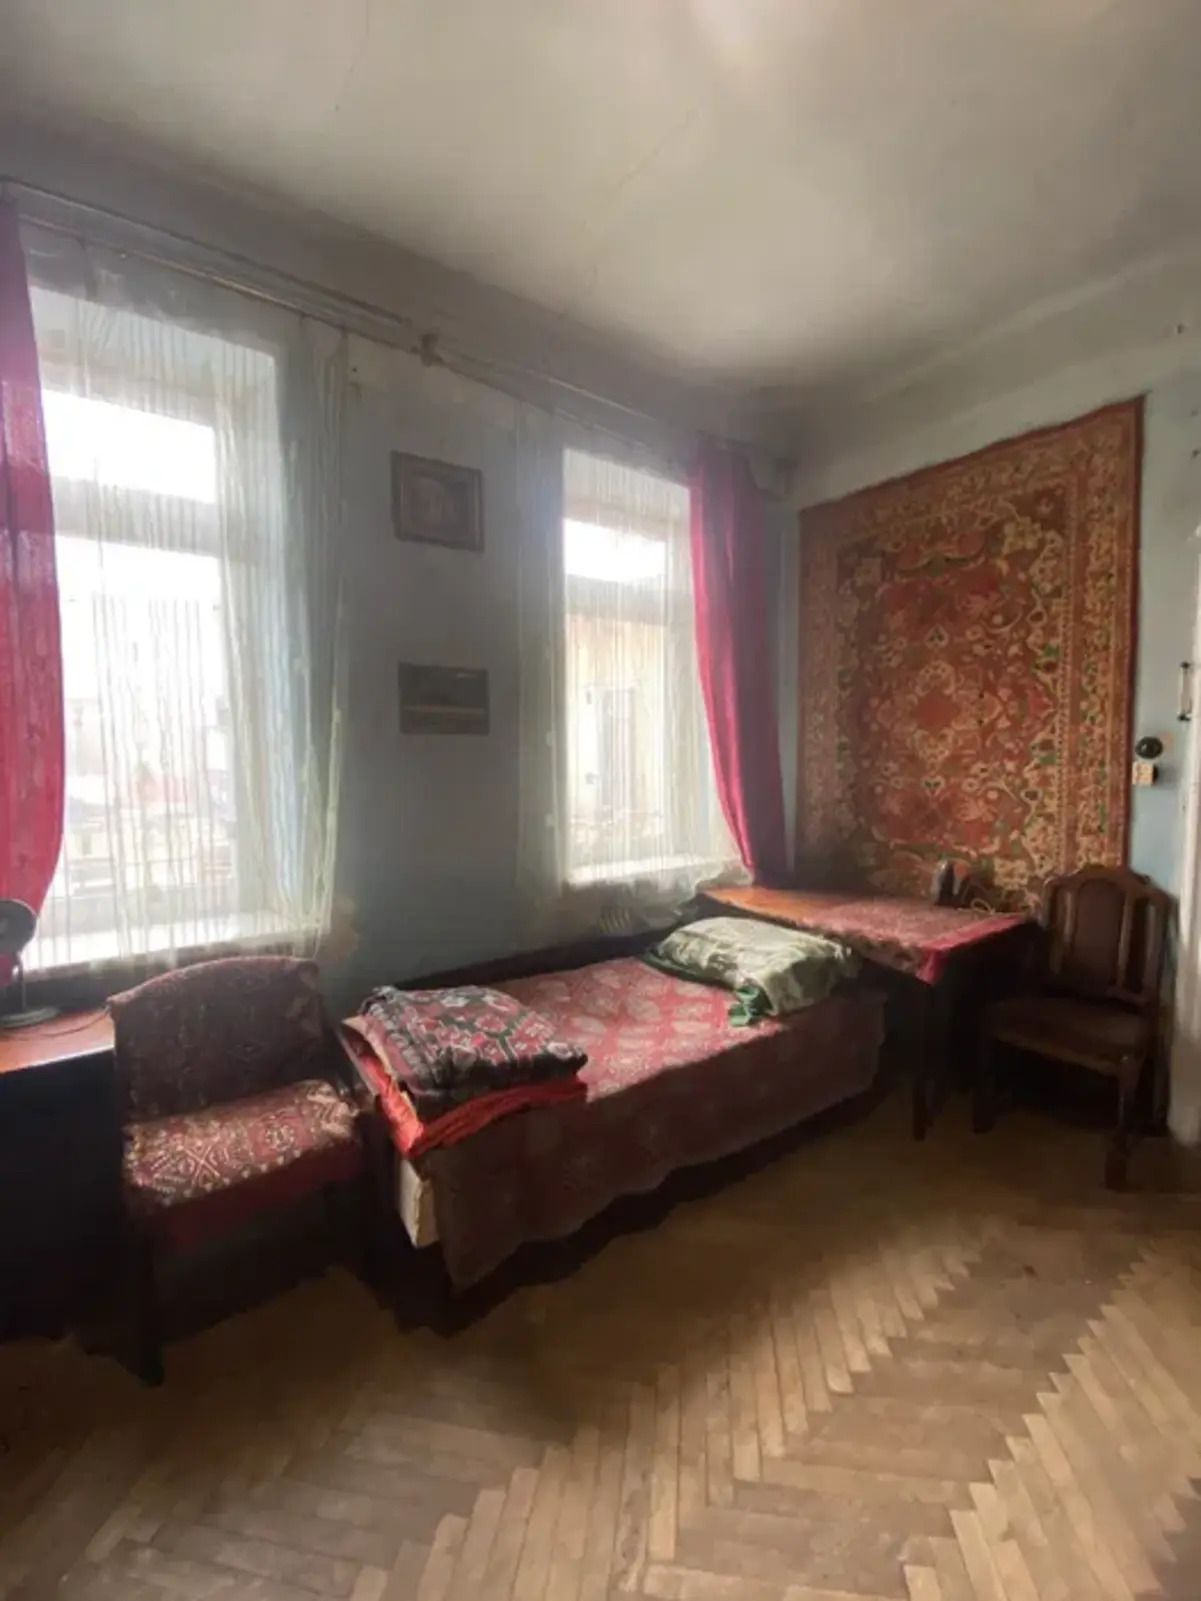 Самая дешевая квартира во Львове - сколько стоит и как выглядит - Недвижимость